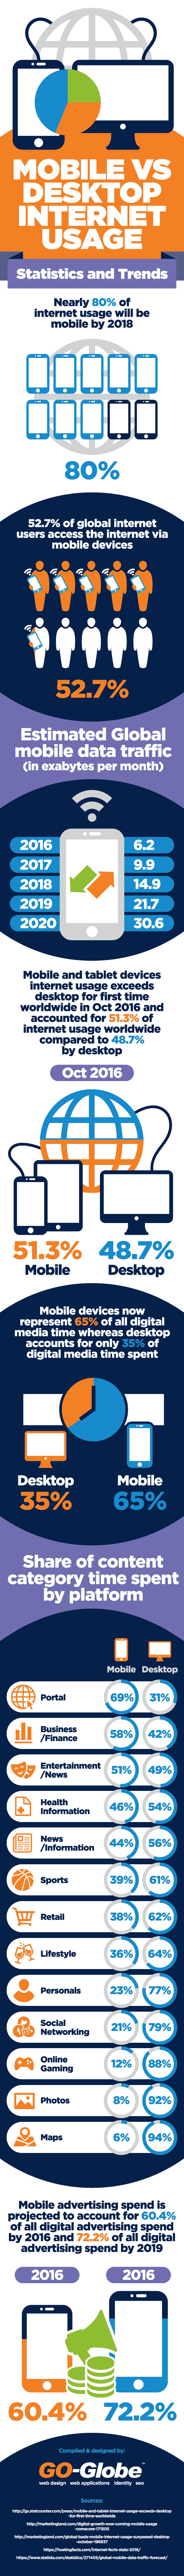 Mobile v. Desktop Internet Usage Infographic